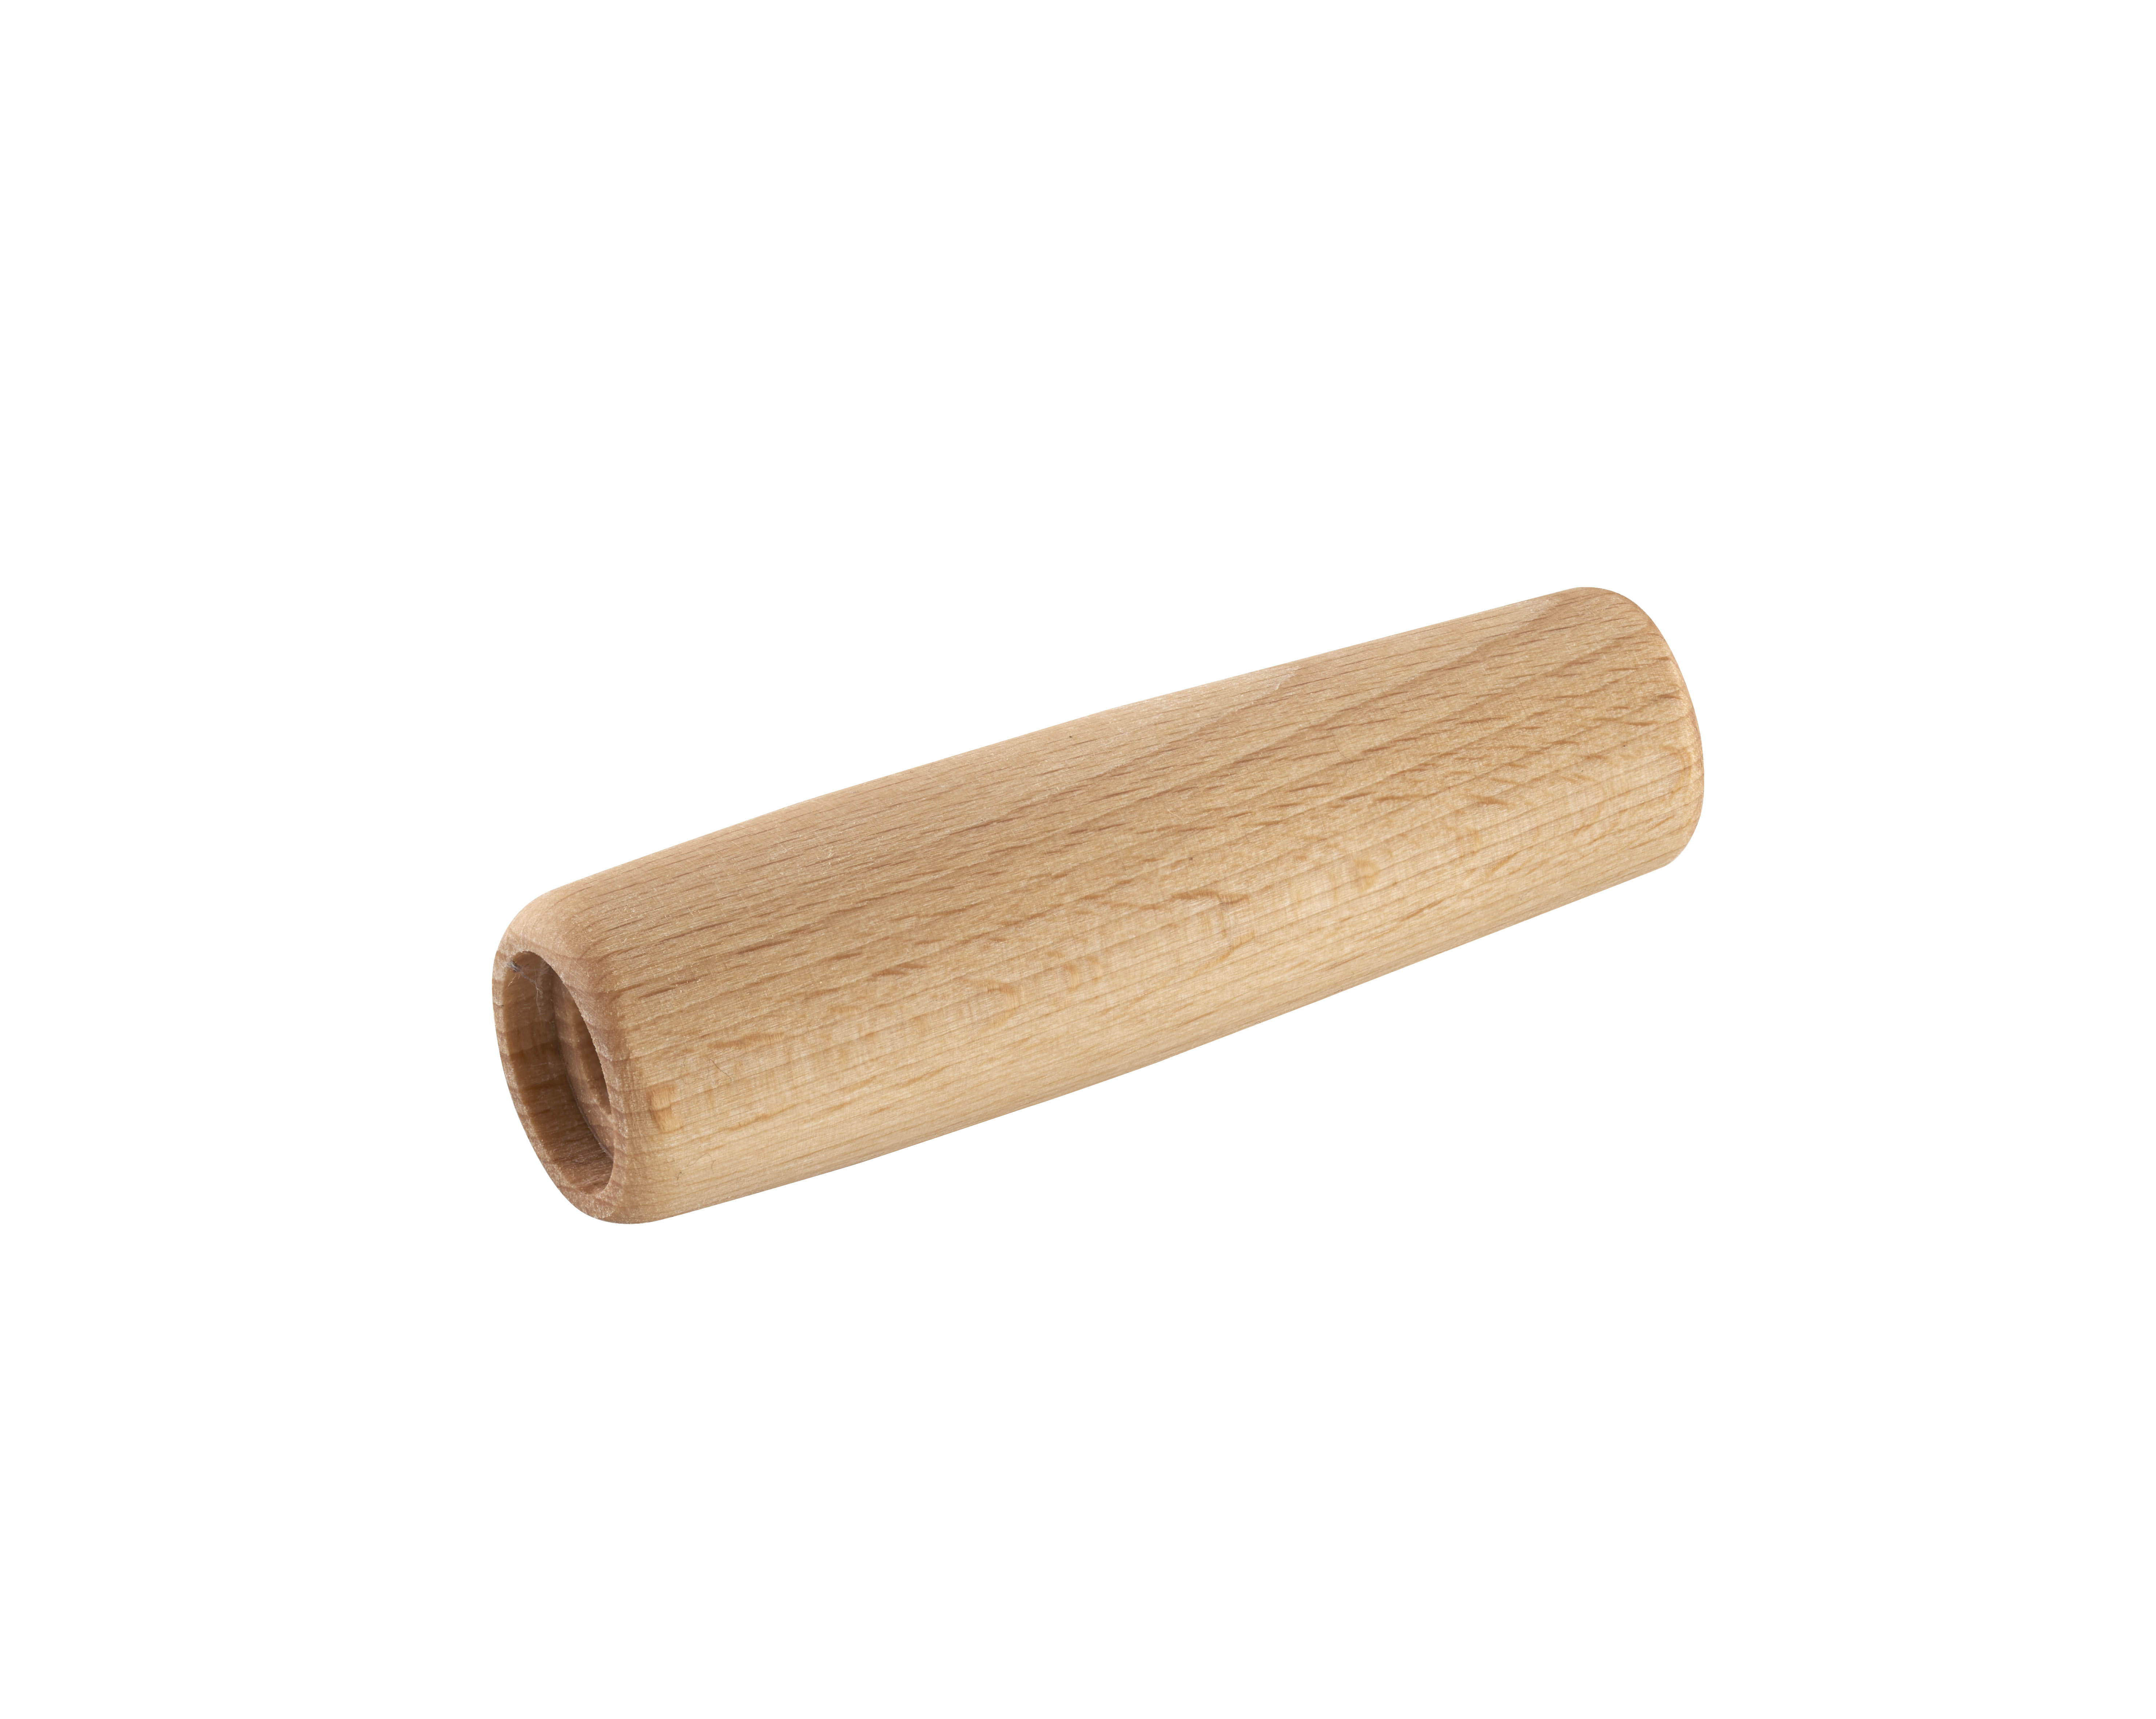 Beech wood handle